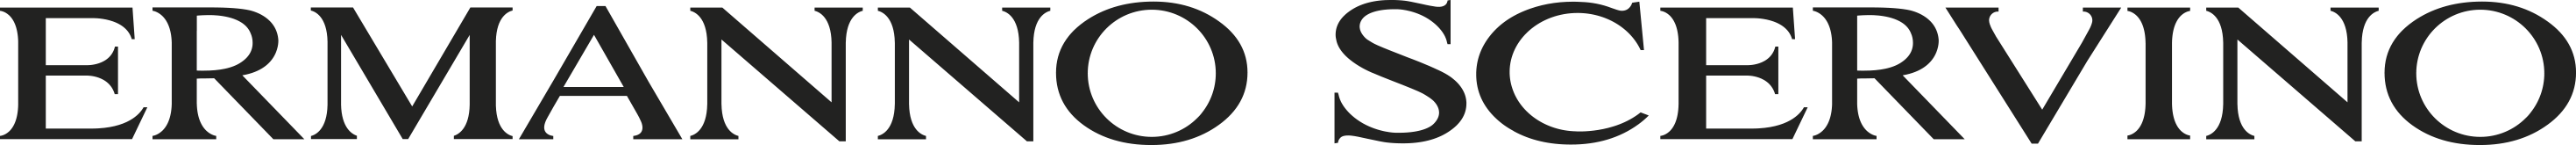 Brand logo for Ermanno Scervino